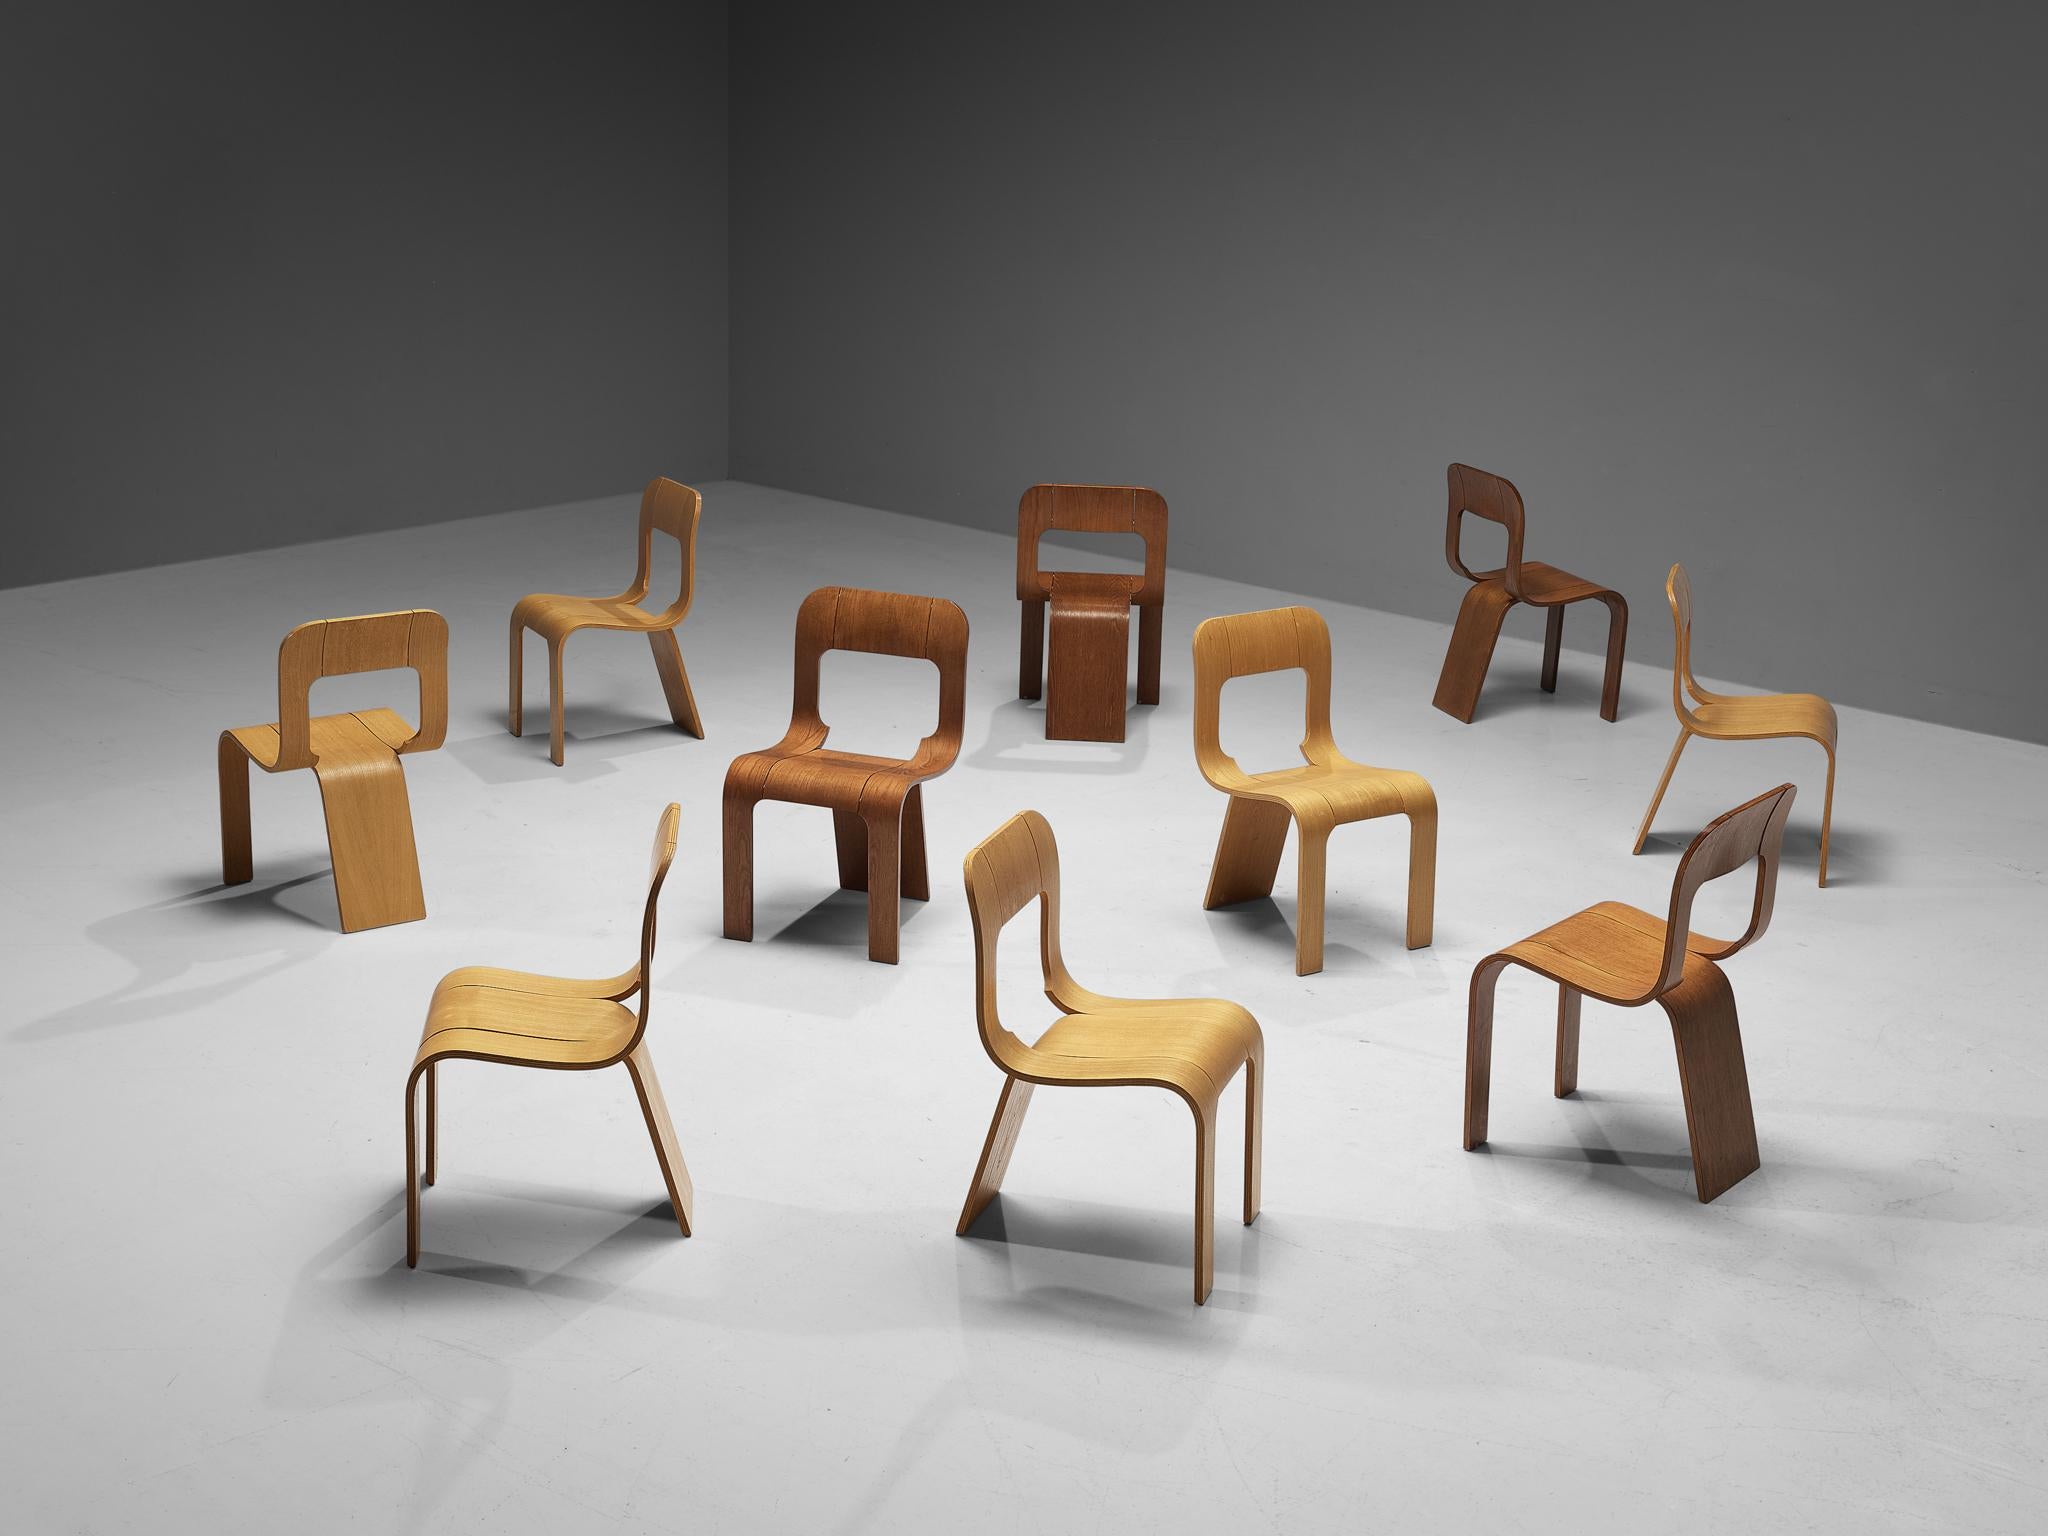 Gigi Sabadin für Stilwood, Satz von zehn Stühlen, Esche Sperrholz, Italien, 1970er Jahre.

Diese Stühle sind ein origineller Entwurf des Italieners Gigi Sabadin und bestehen aus gebogenem Eschen-Sperrholz mit einer furnierten Oberfläche. Das